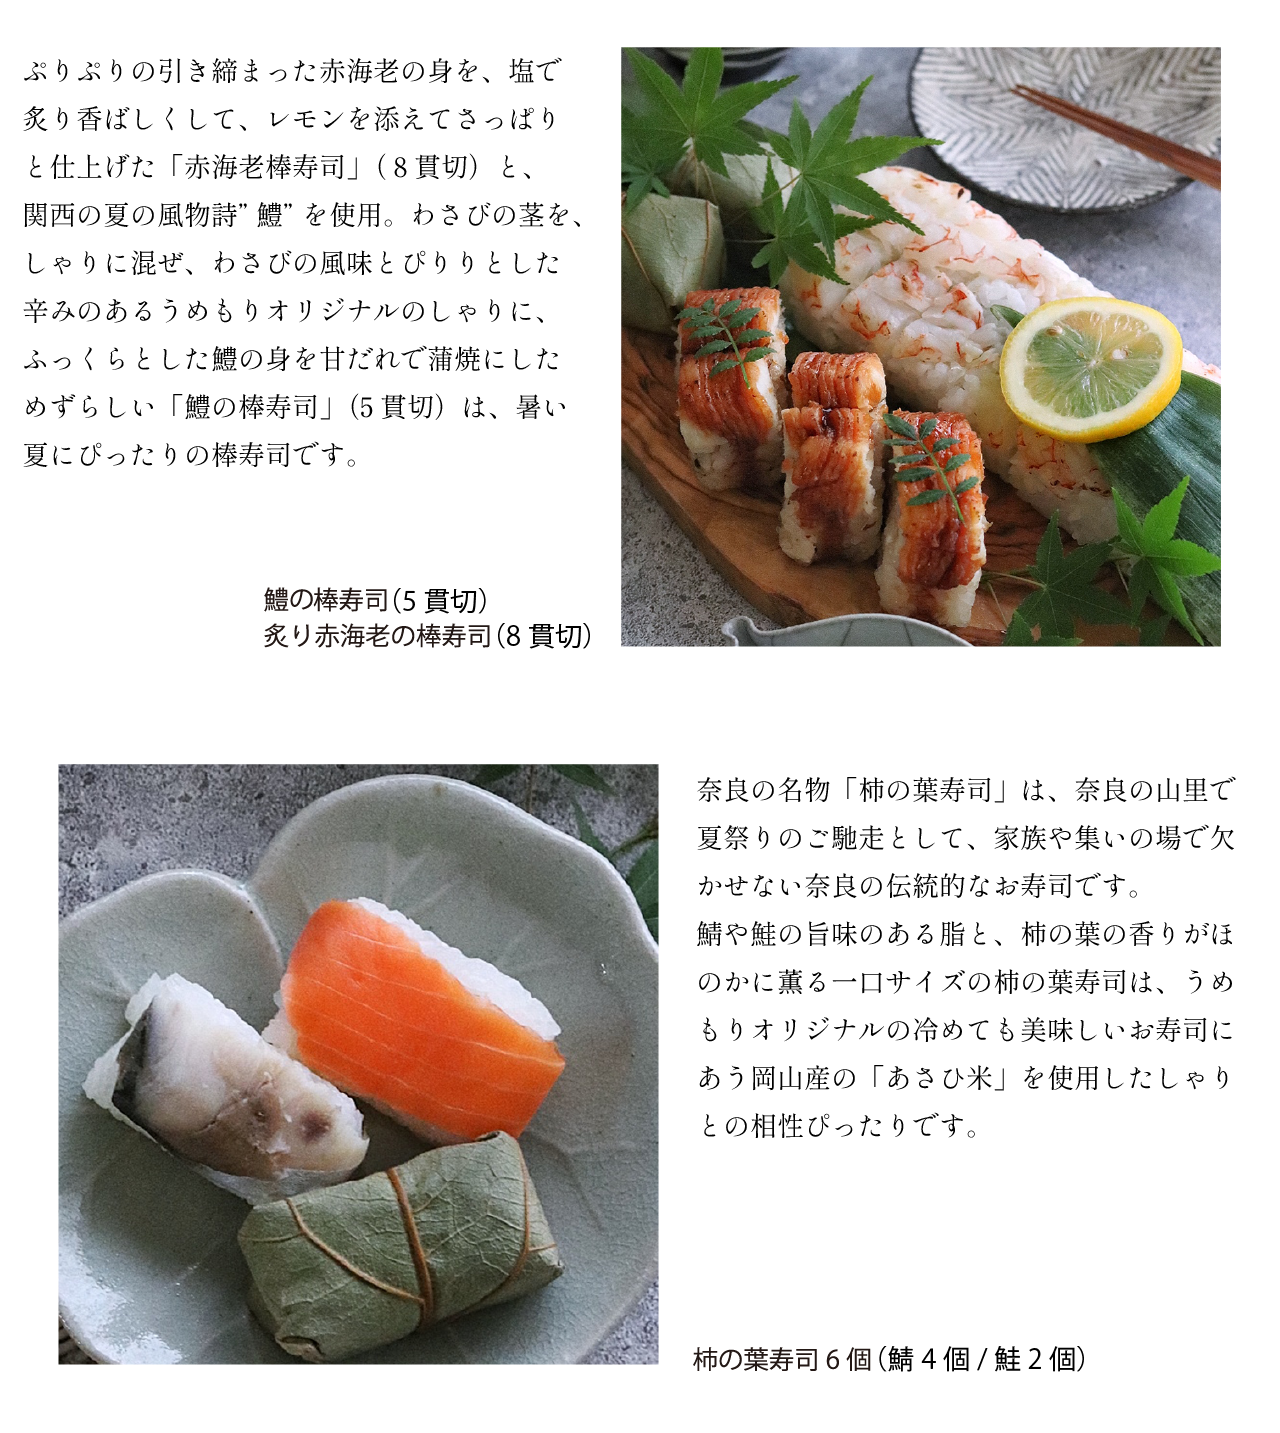 商品詳細棒寿司と柿の葉寿司